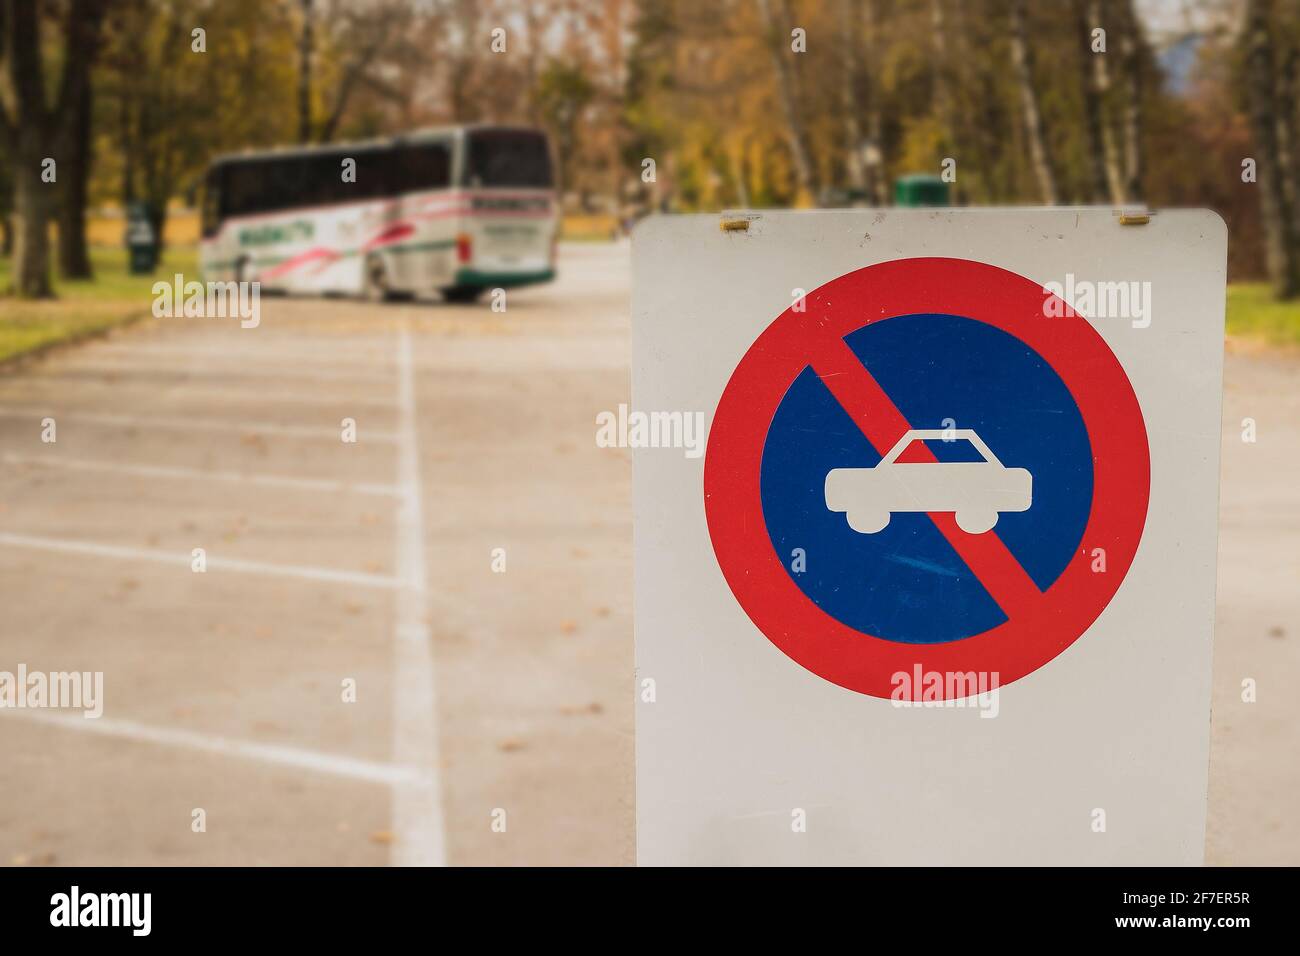 Tableau blanc avec panneau indiquant que les voitures ne doivent pas se garer au-delà de ce poing. Seul un parking pour bus ou autocars est disponible au-delà de ce point. Banque D'Images